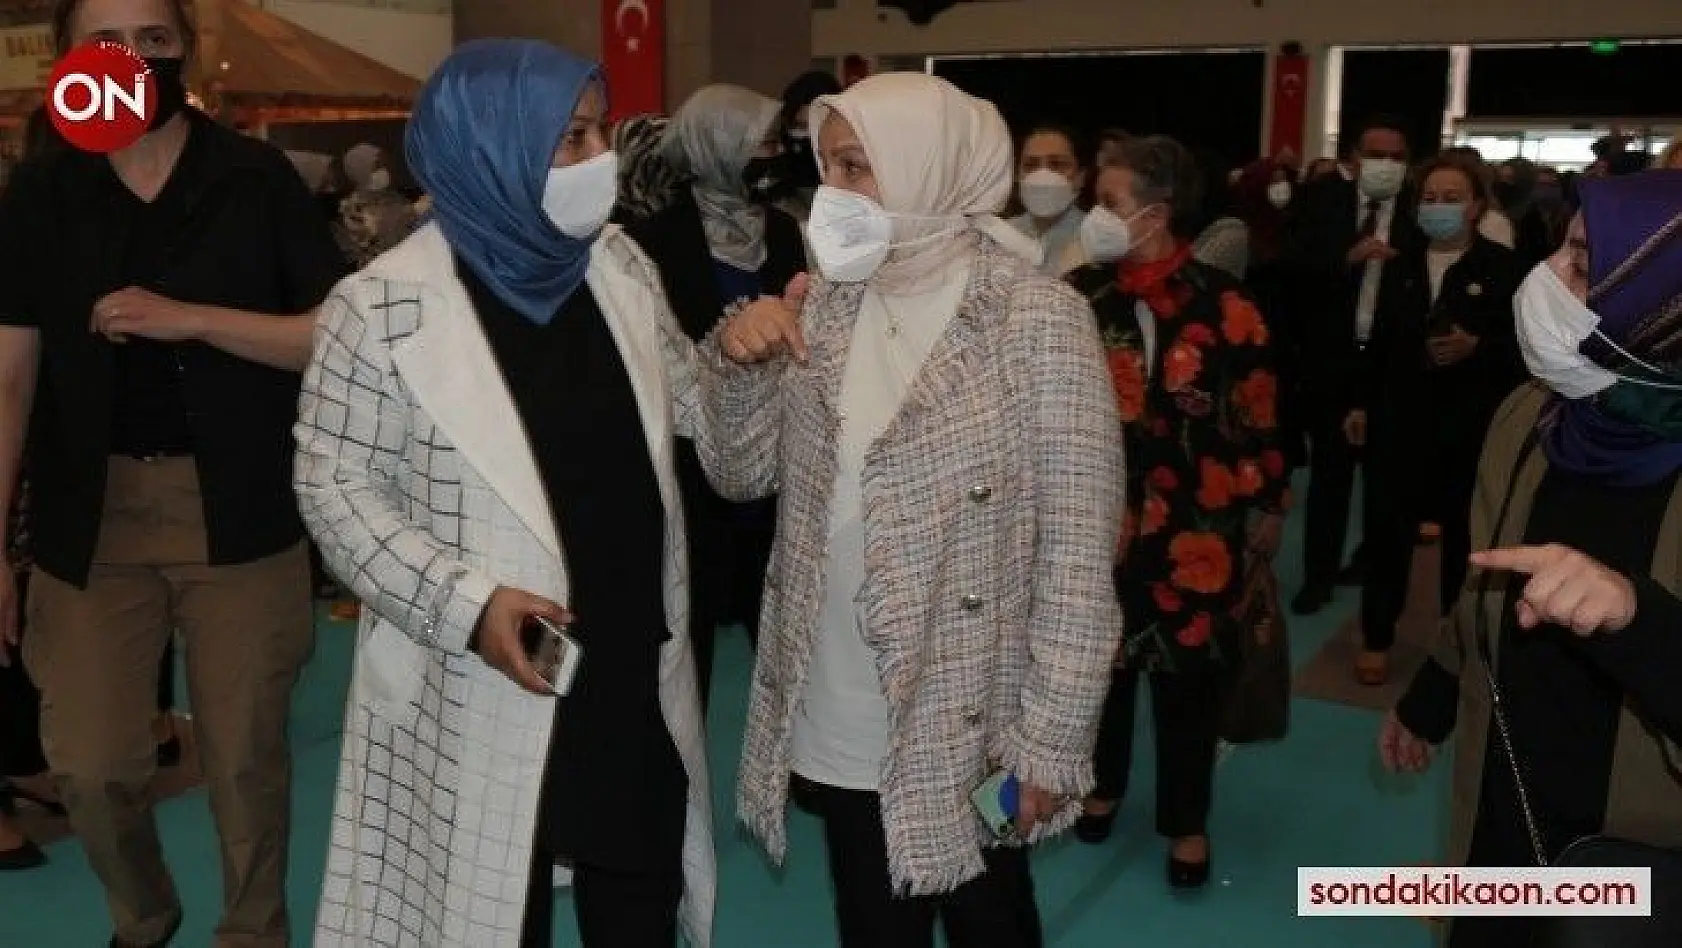 AK Parti Genel Merkez Kadın Kolları Başkanı Ayşe Keşir'den İstanbul Sözleşmesi yorumu